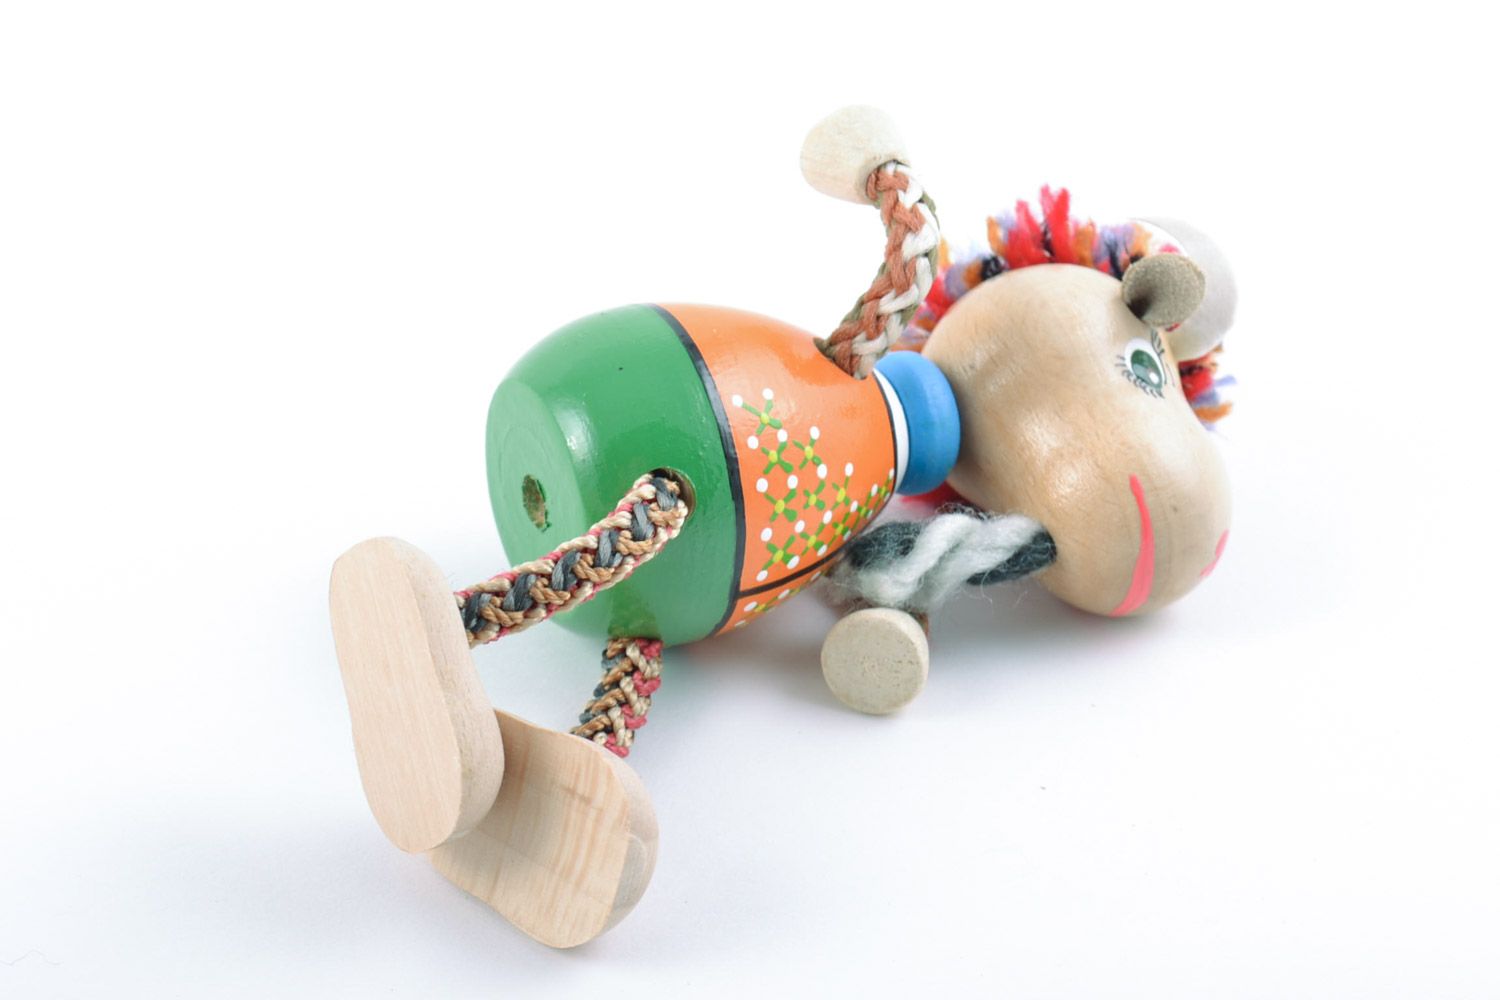 Jouet en bois original fait main peint figurine décorative pour enfant Chèvre photo 5